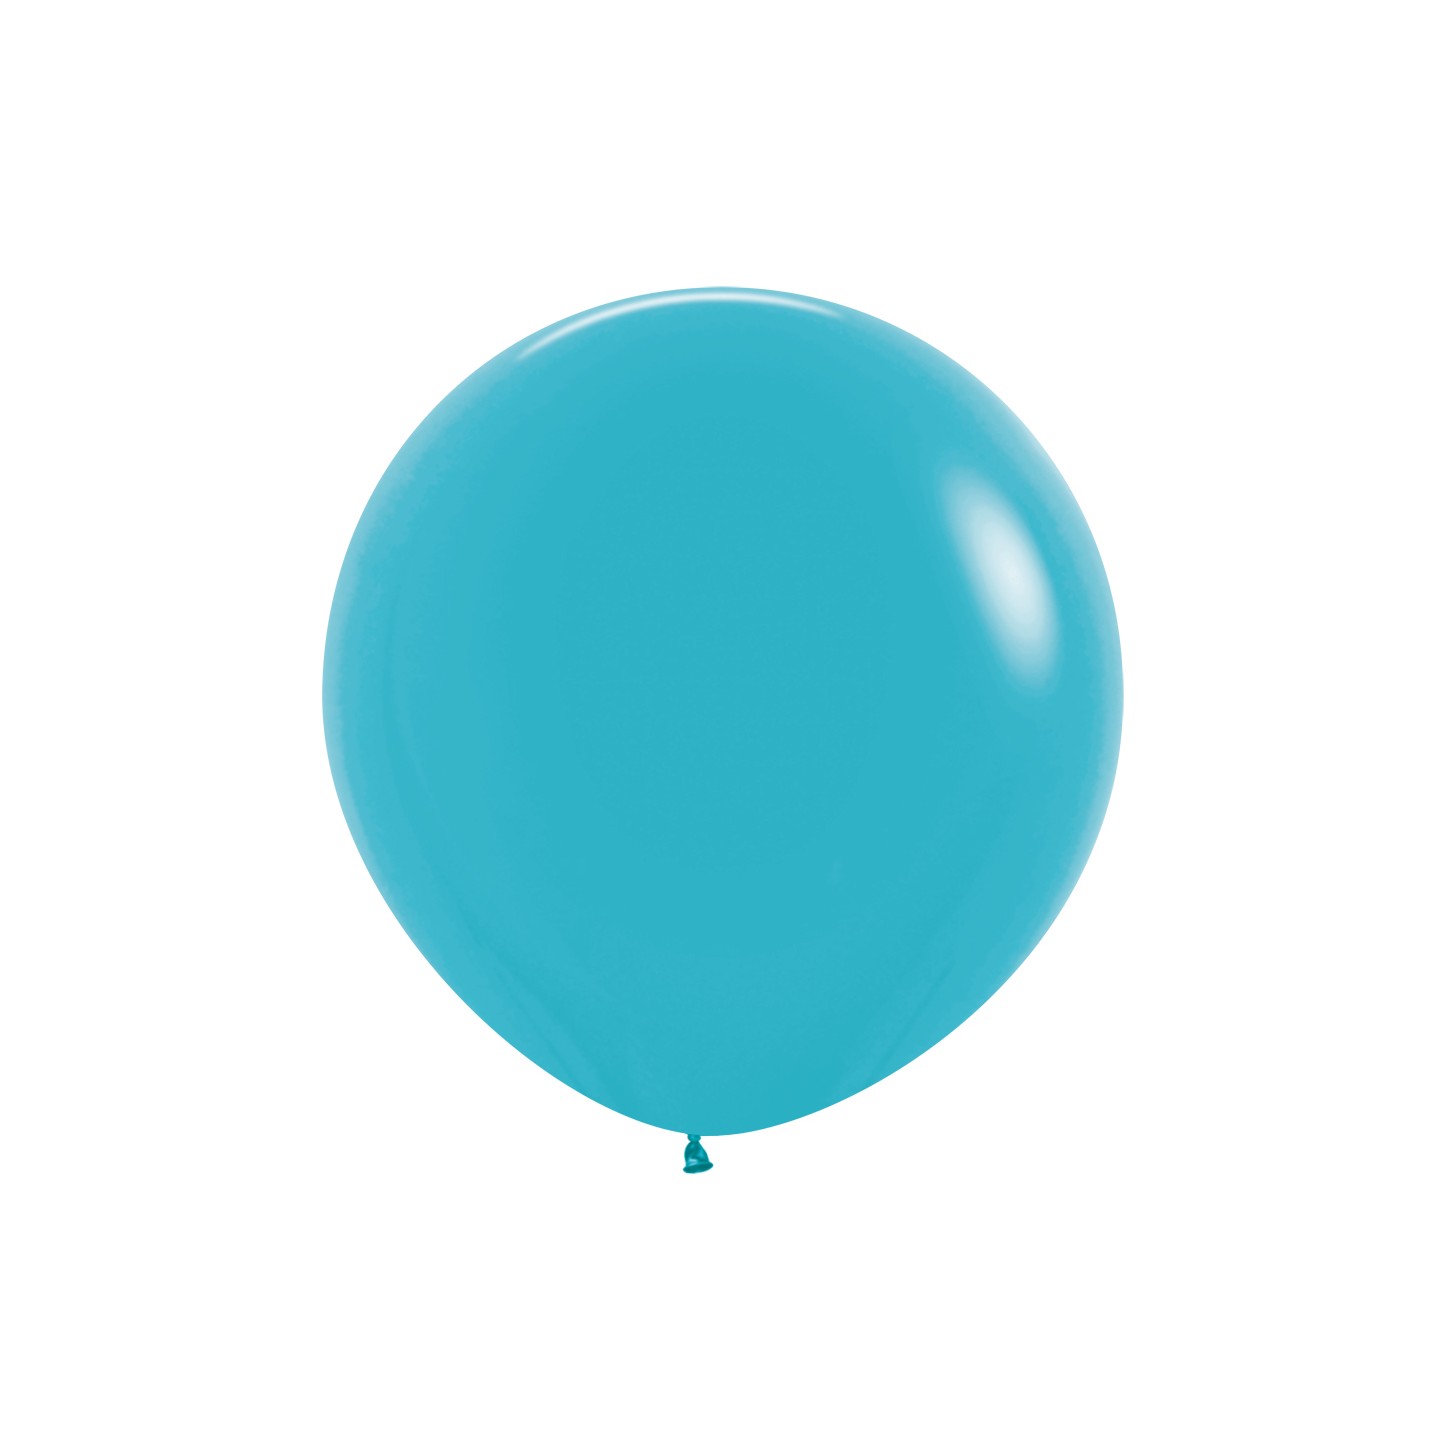 sempertex xl grote ballon Caribbean blue blauw